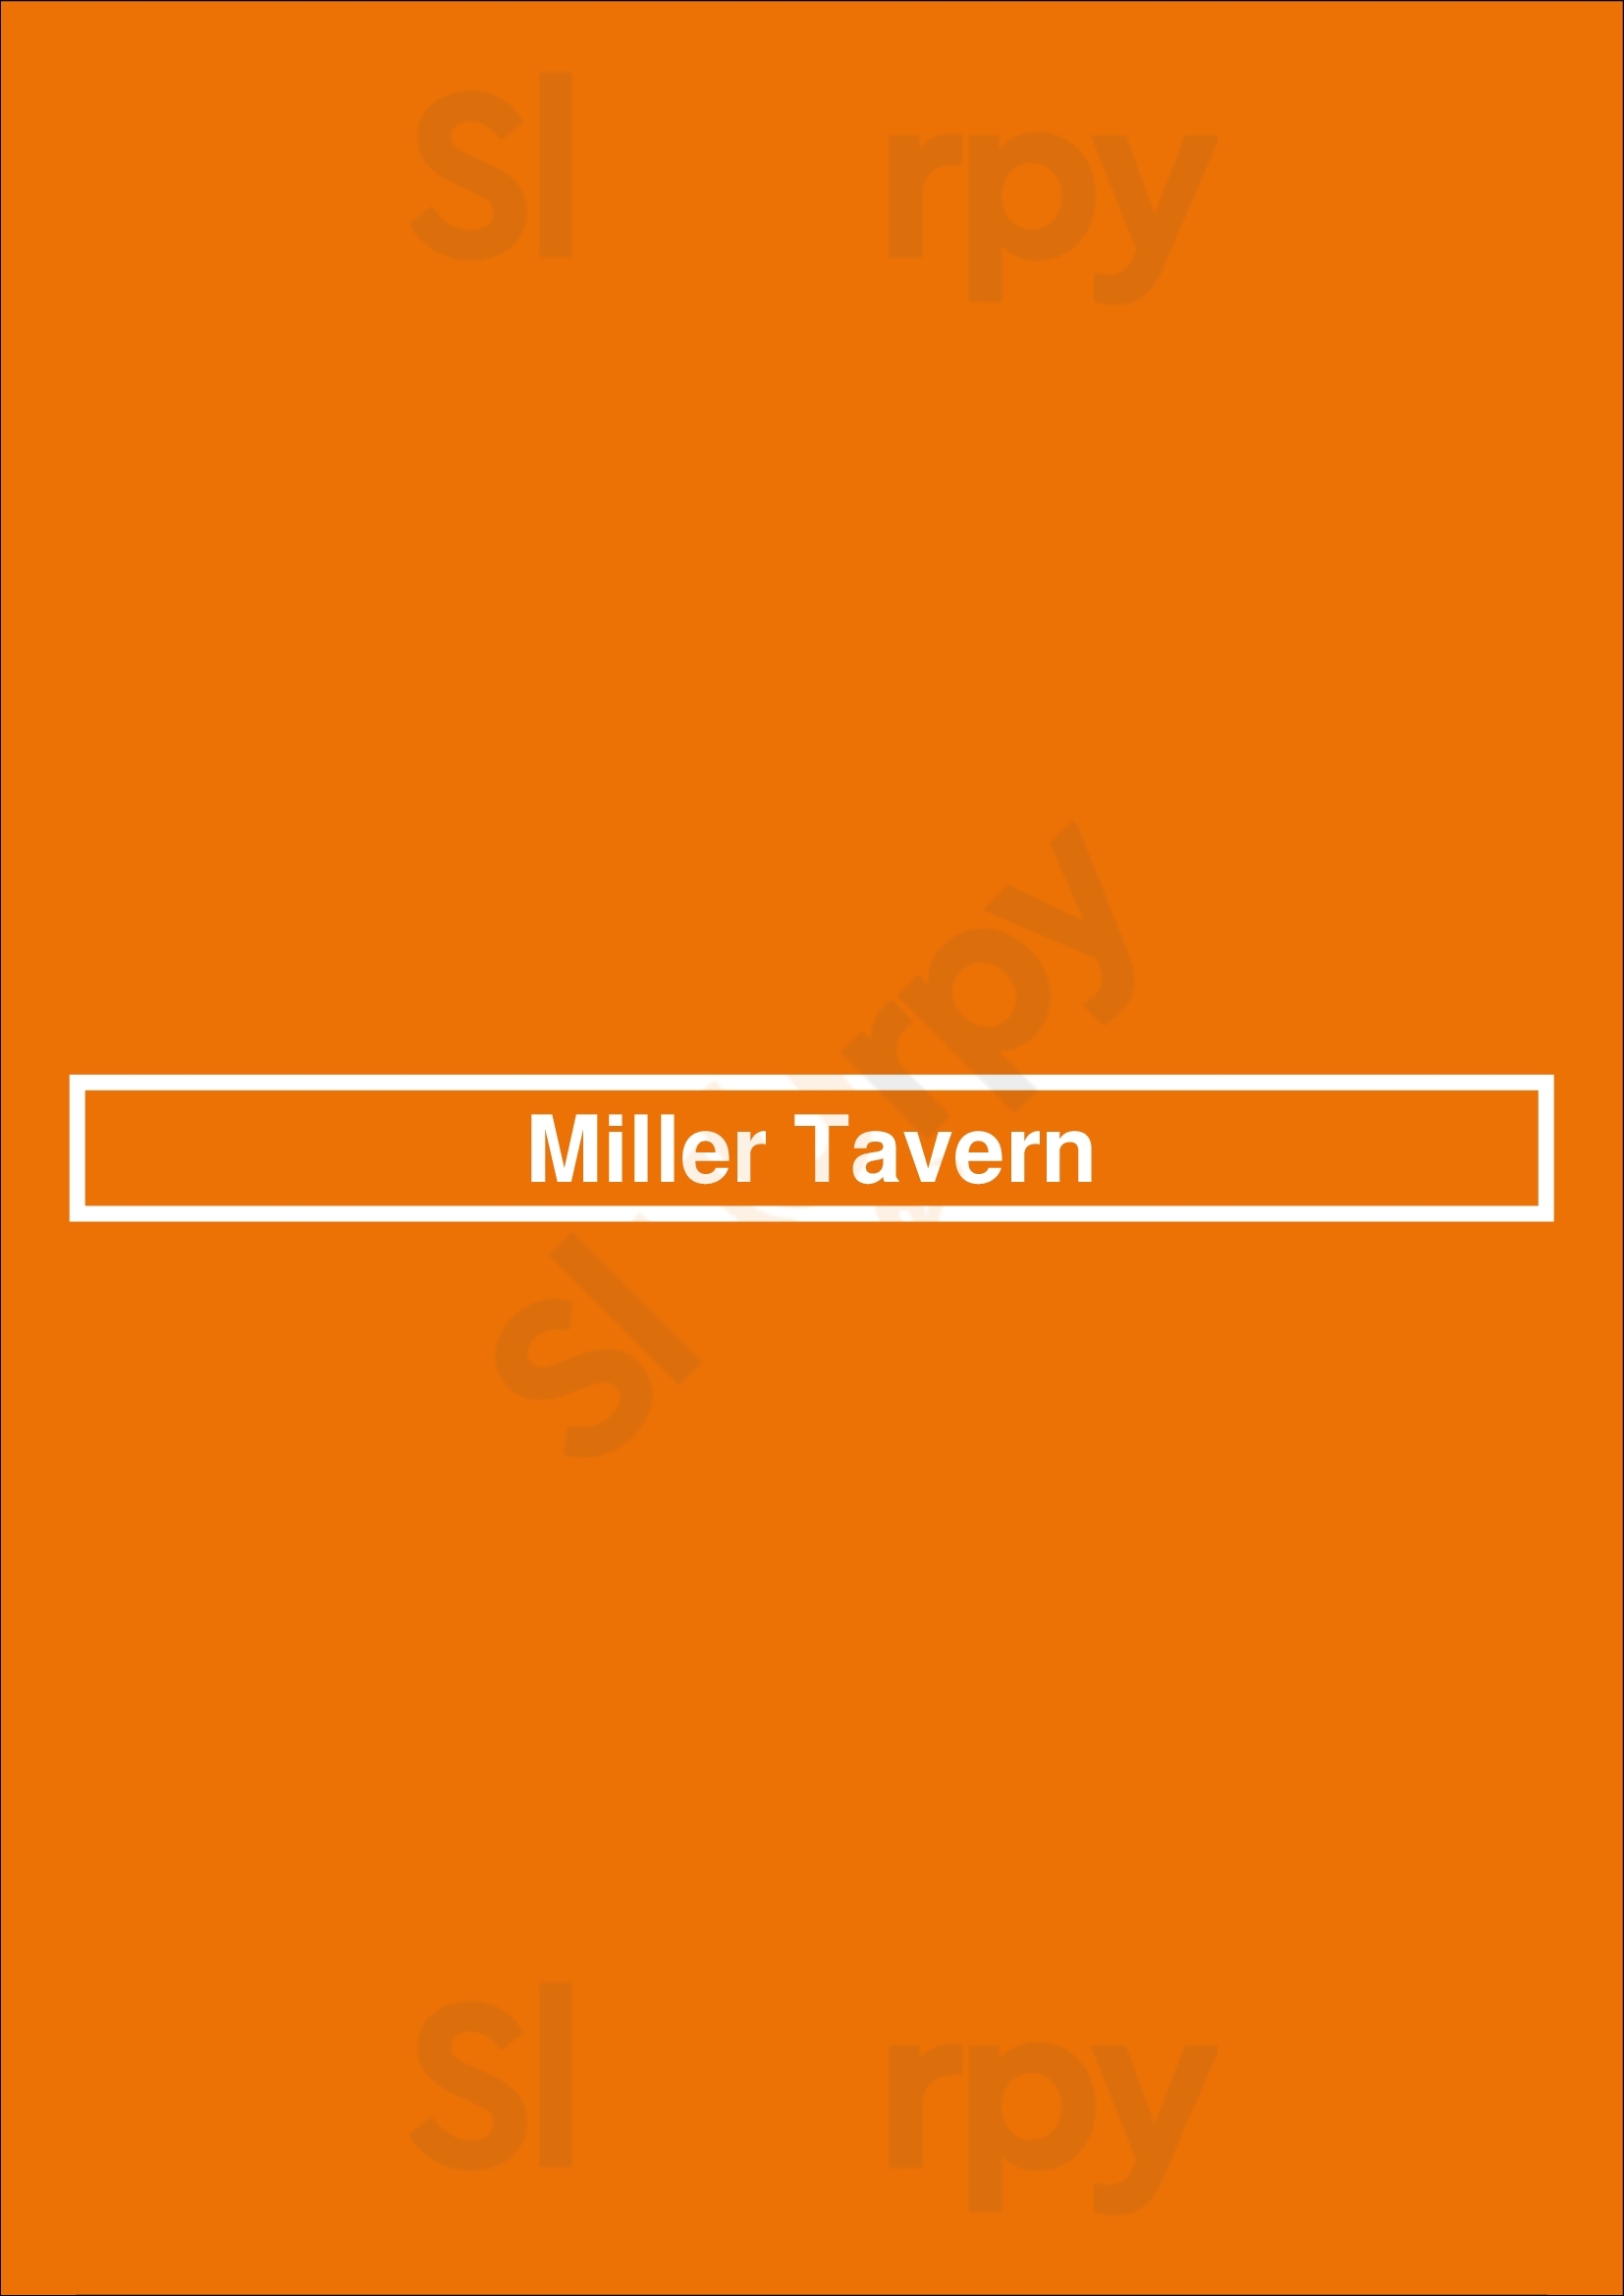 Miller Tavern Toronto Menu - 1